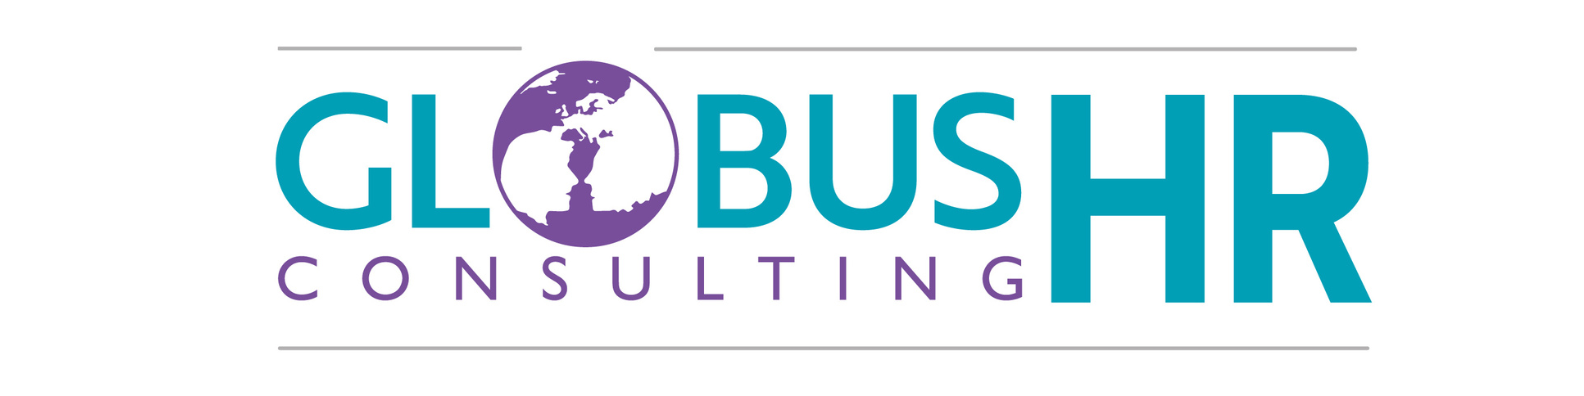 GlobusHR Consulting logo